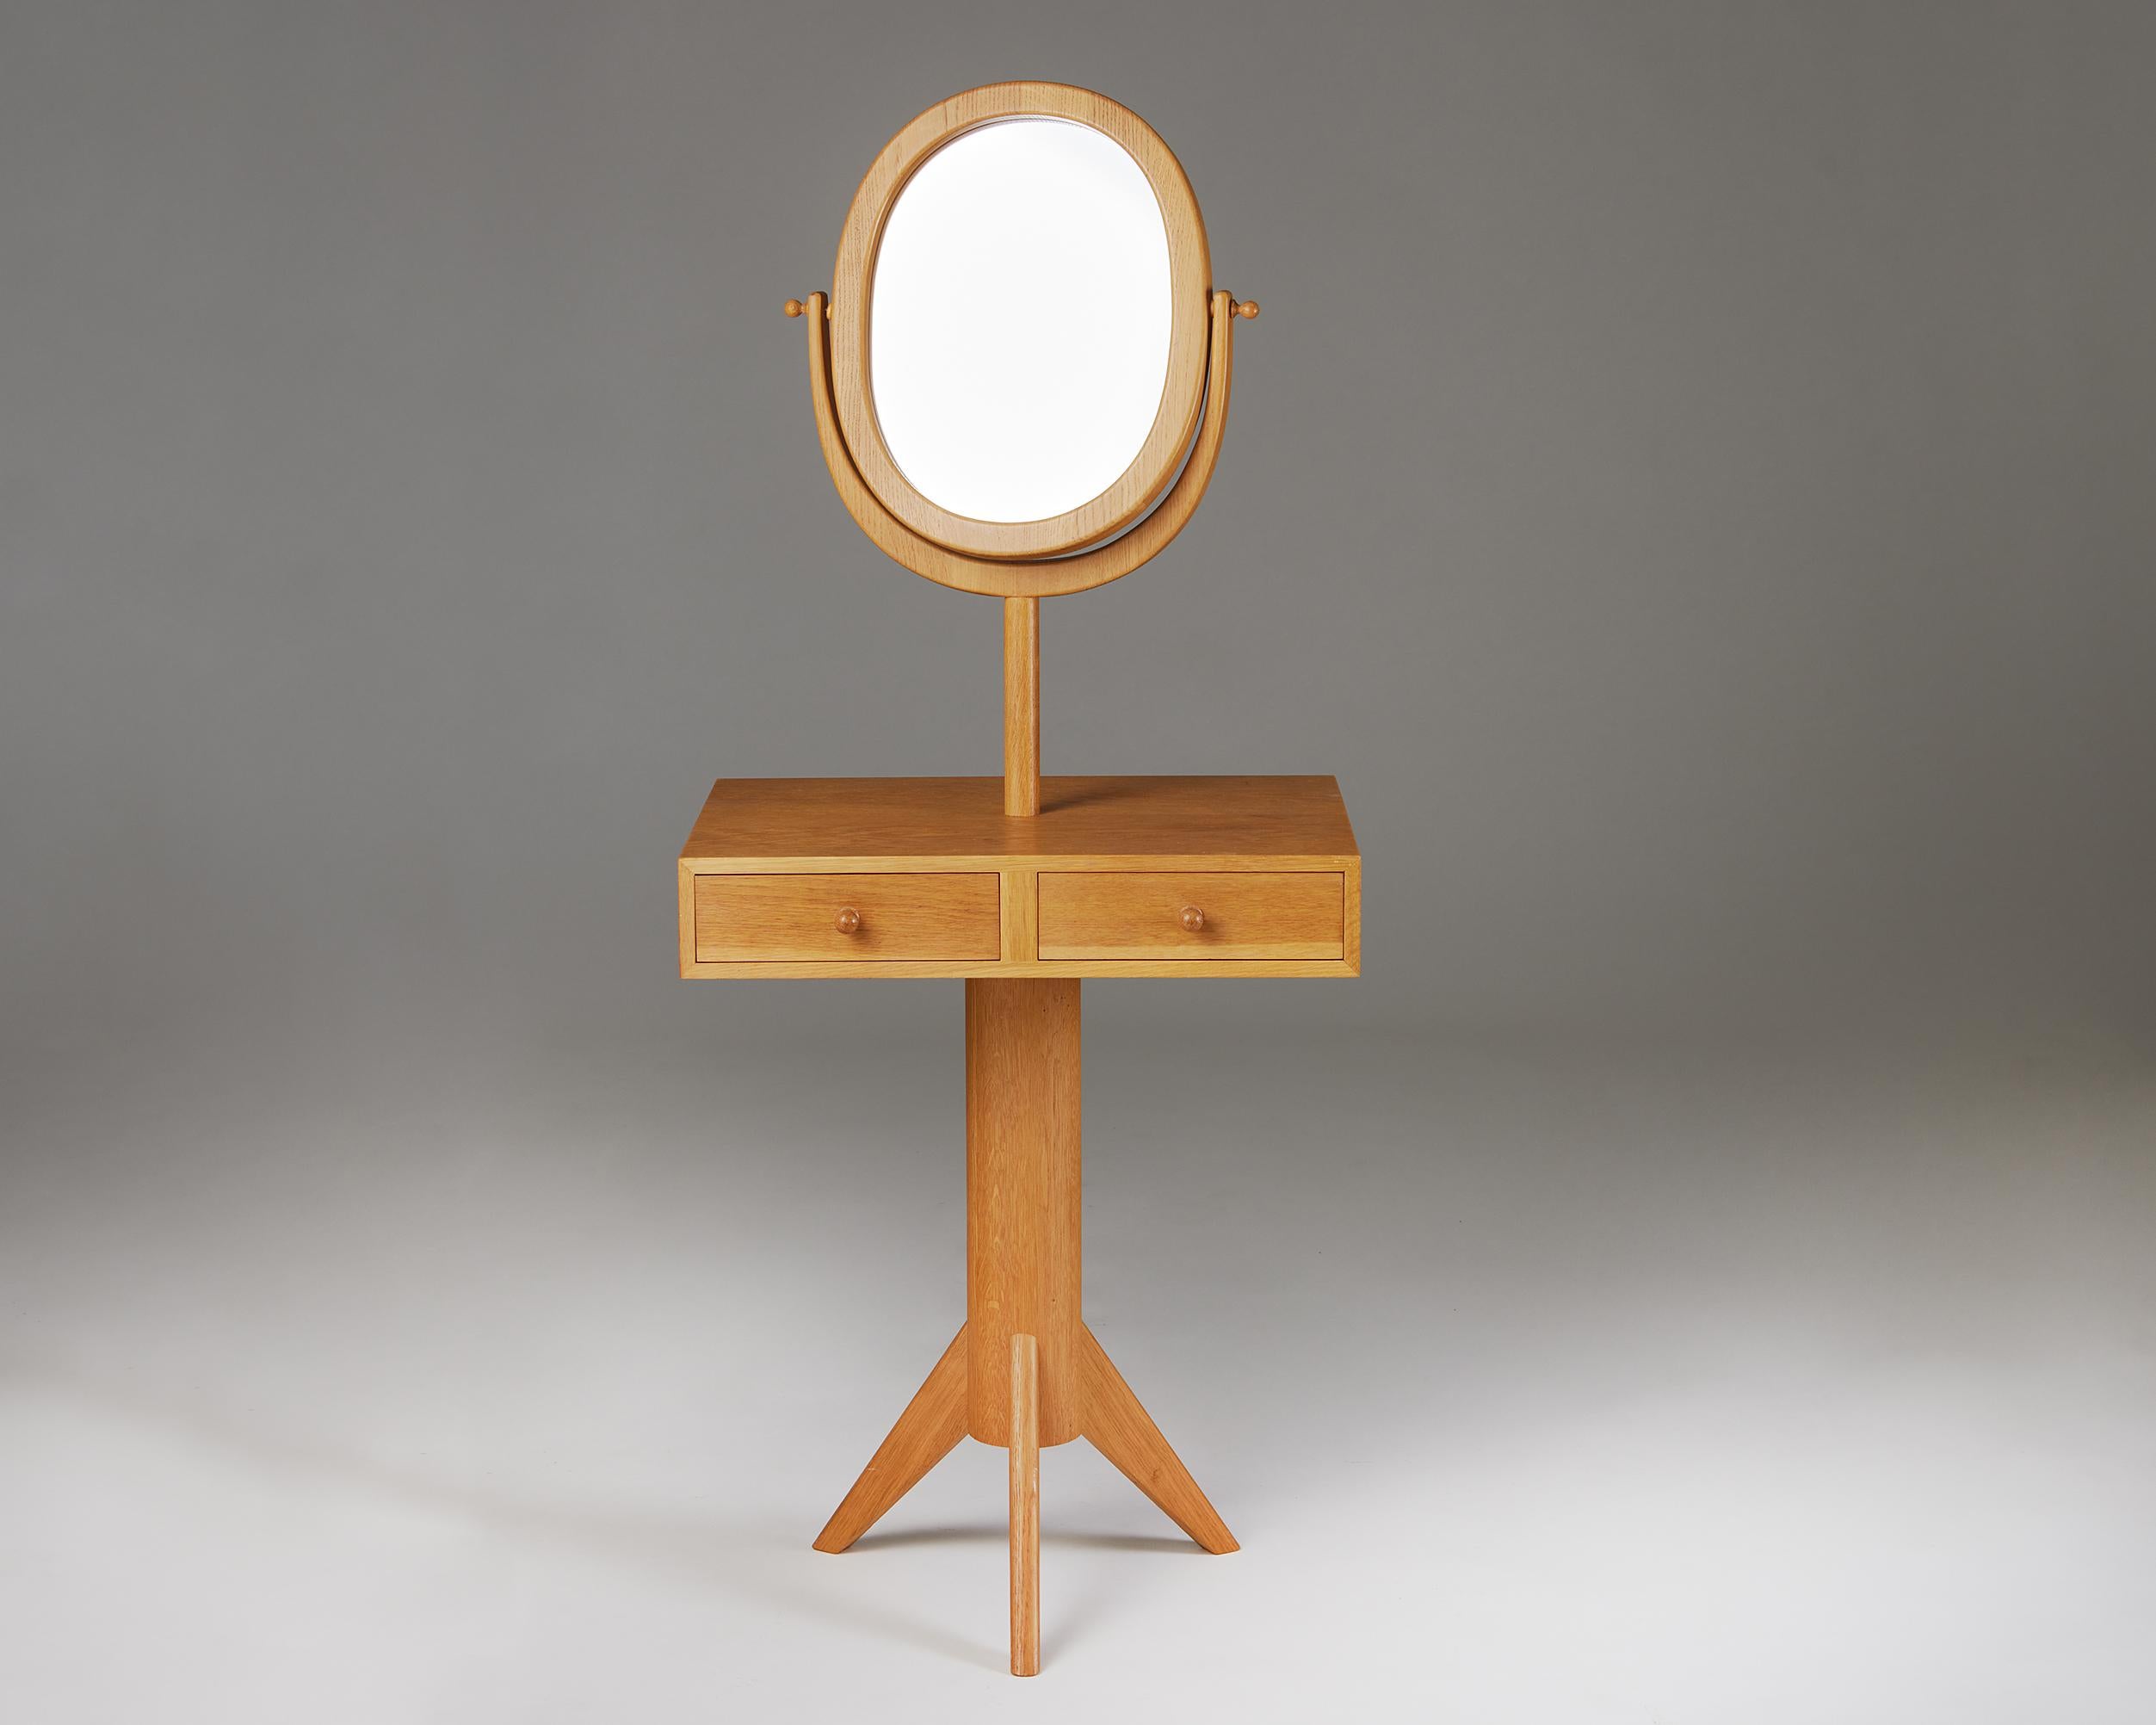 Schminktisch, entworfen von Erik Höglund für Kopparfly,
Schweden. 1960s.
Eiche und Spiegelglas.

Maße: H: 130 cm / 4' 3''
B: 55 cm / 21 2/3''
T: 42 cm / 16 1/2''.